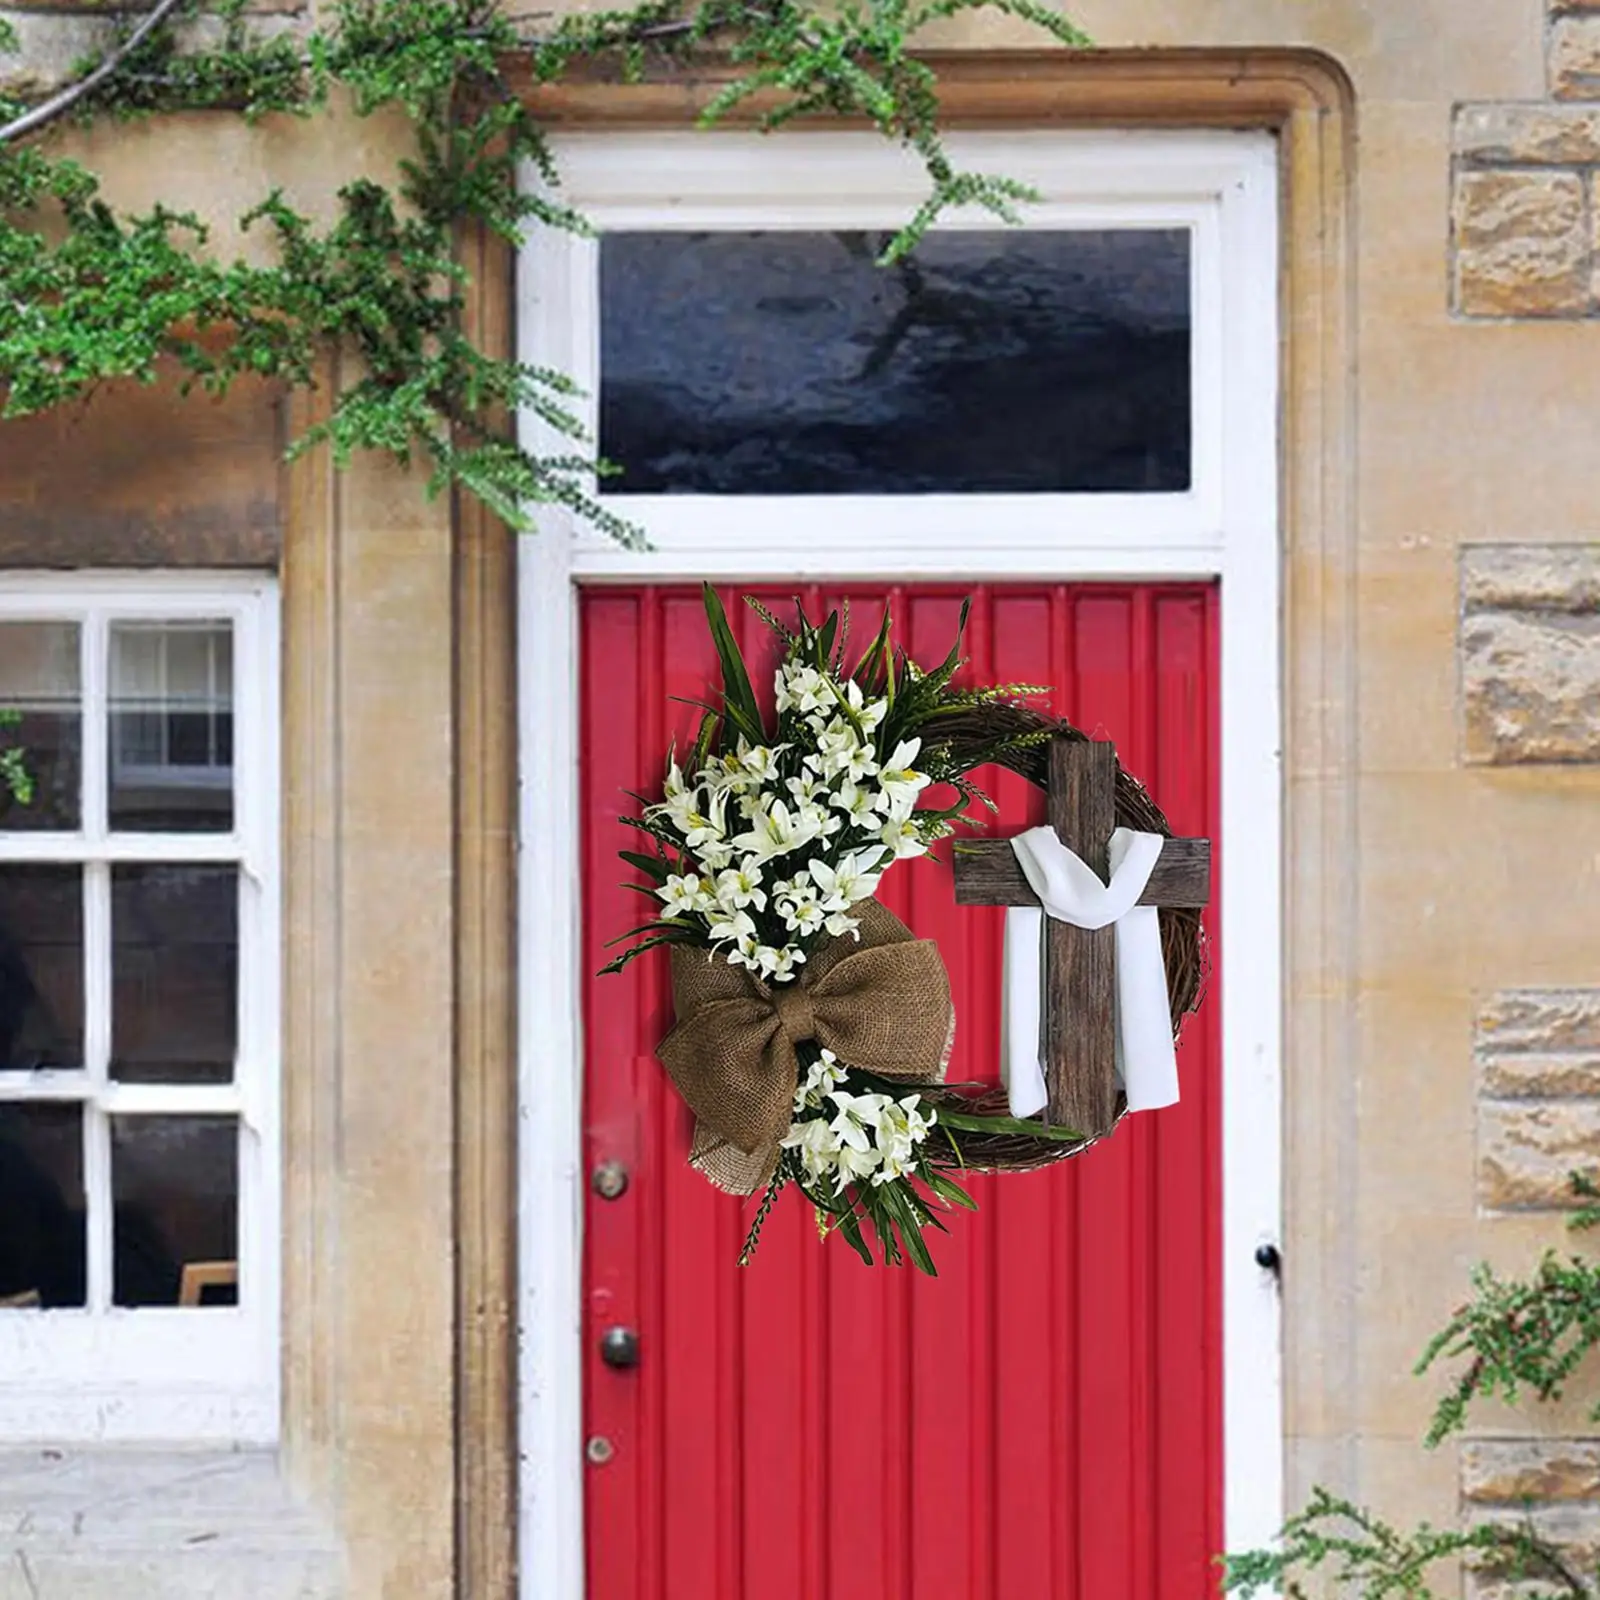 Round Easter Door Wreath with Cross with Burlap Home Front Door Decor Rustic